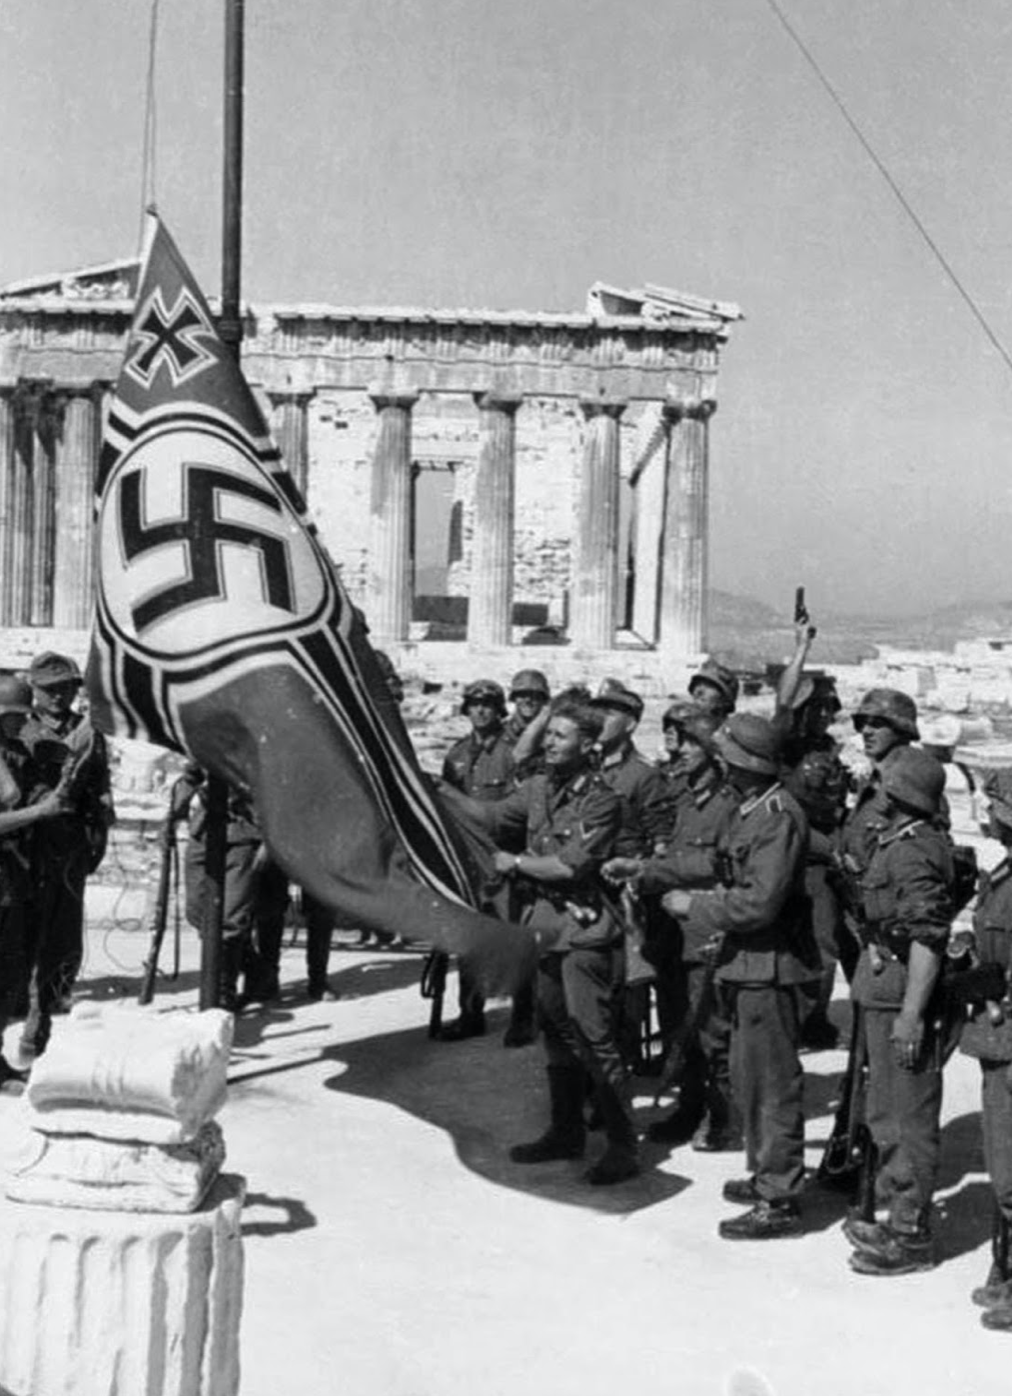 81 χρόνια μετά από τη γερμανική εισβολή στην Ελλάδα η Γερμανία επανεξοπλίζεται! Ώρα να πληρώσει τις οφειλές της